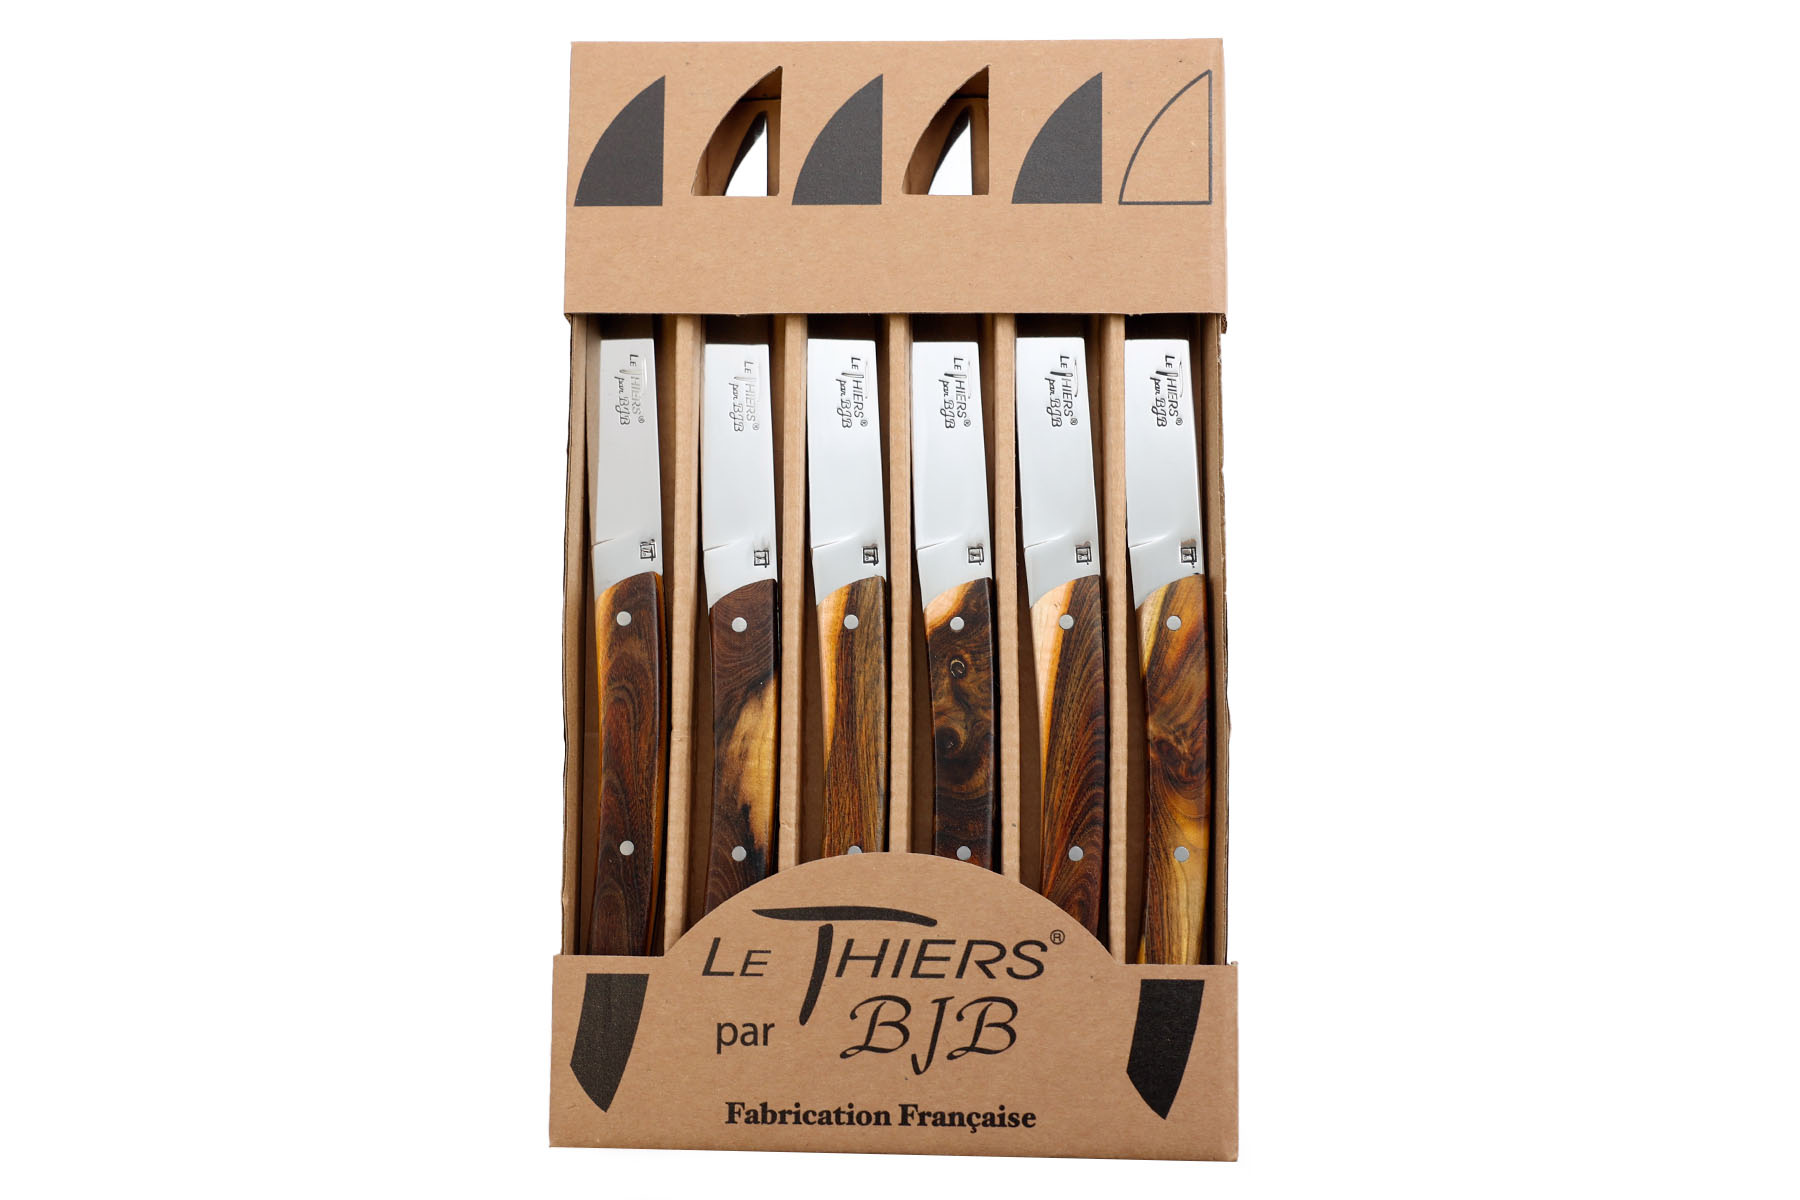 Coffret de 6 couteaux Le Thiers par BJB - modèle Le thiers en pistachier